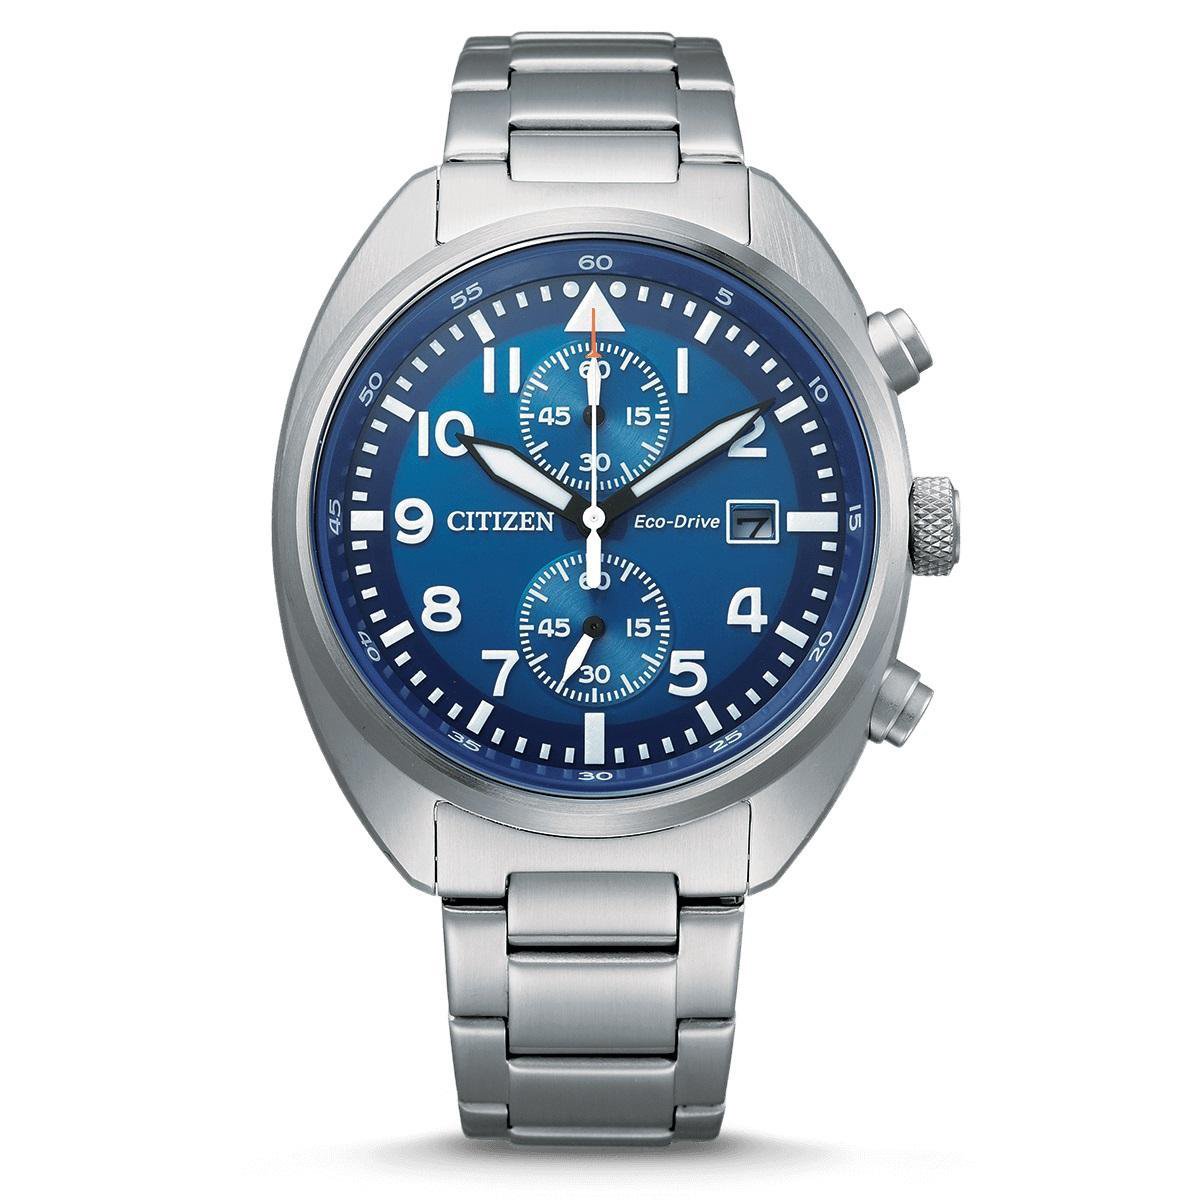 Citizen Eco-Drive Chronograph Horloge - Citizen heren horloge - Blauw - diameter 41 mm - roestvrij staal